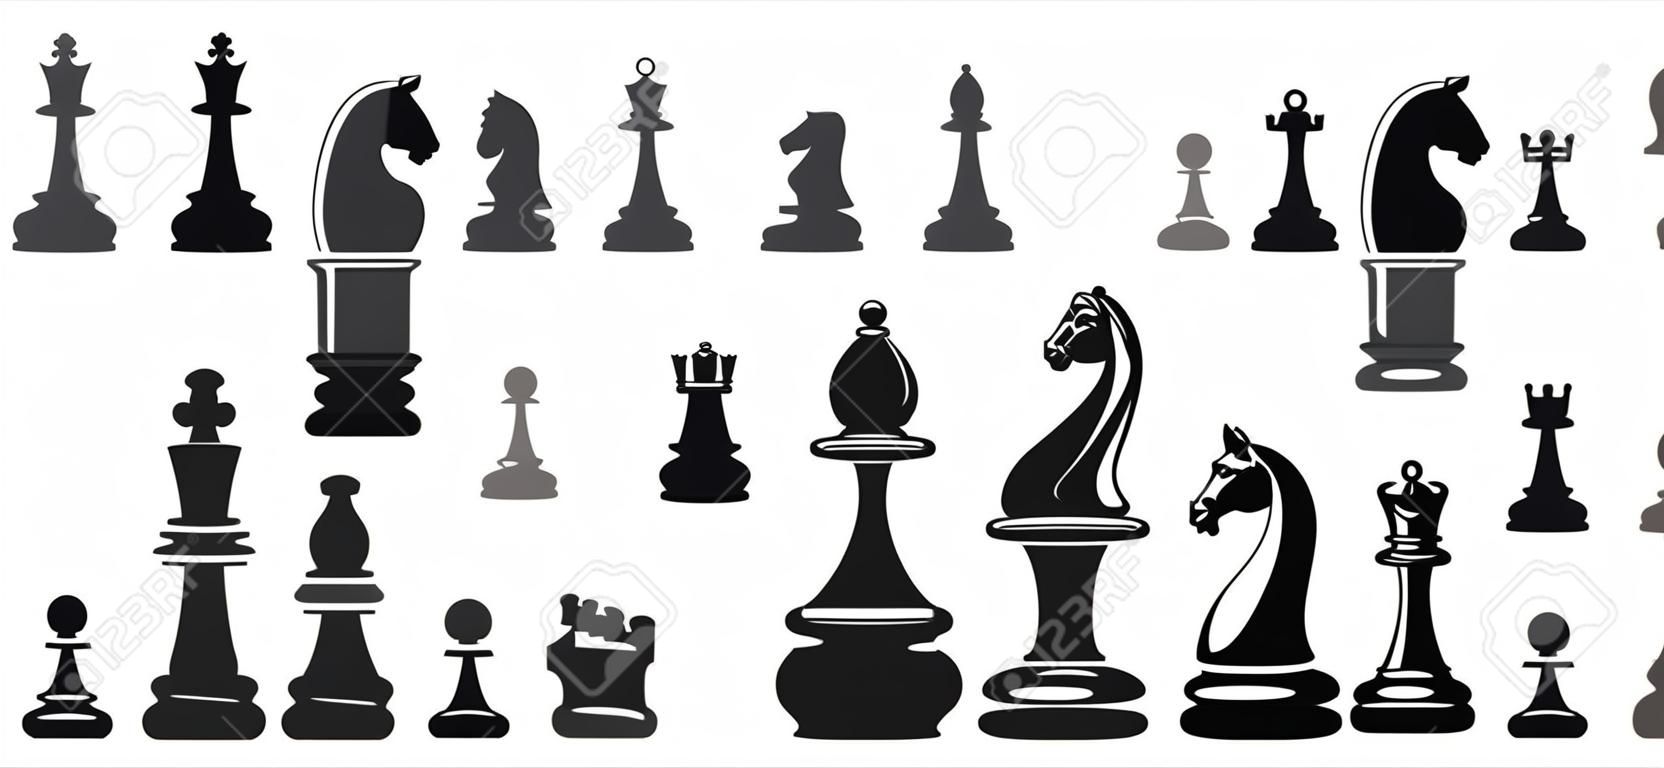 Schach-Figuren auf einem weißen Hintergrund